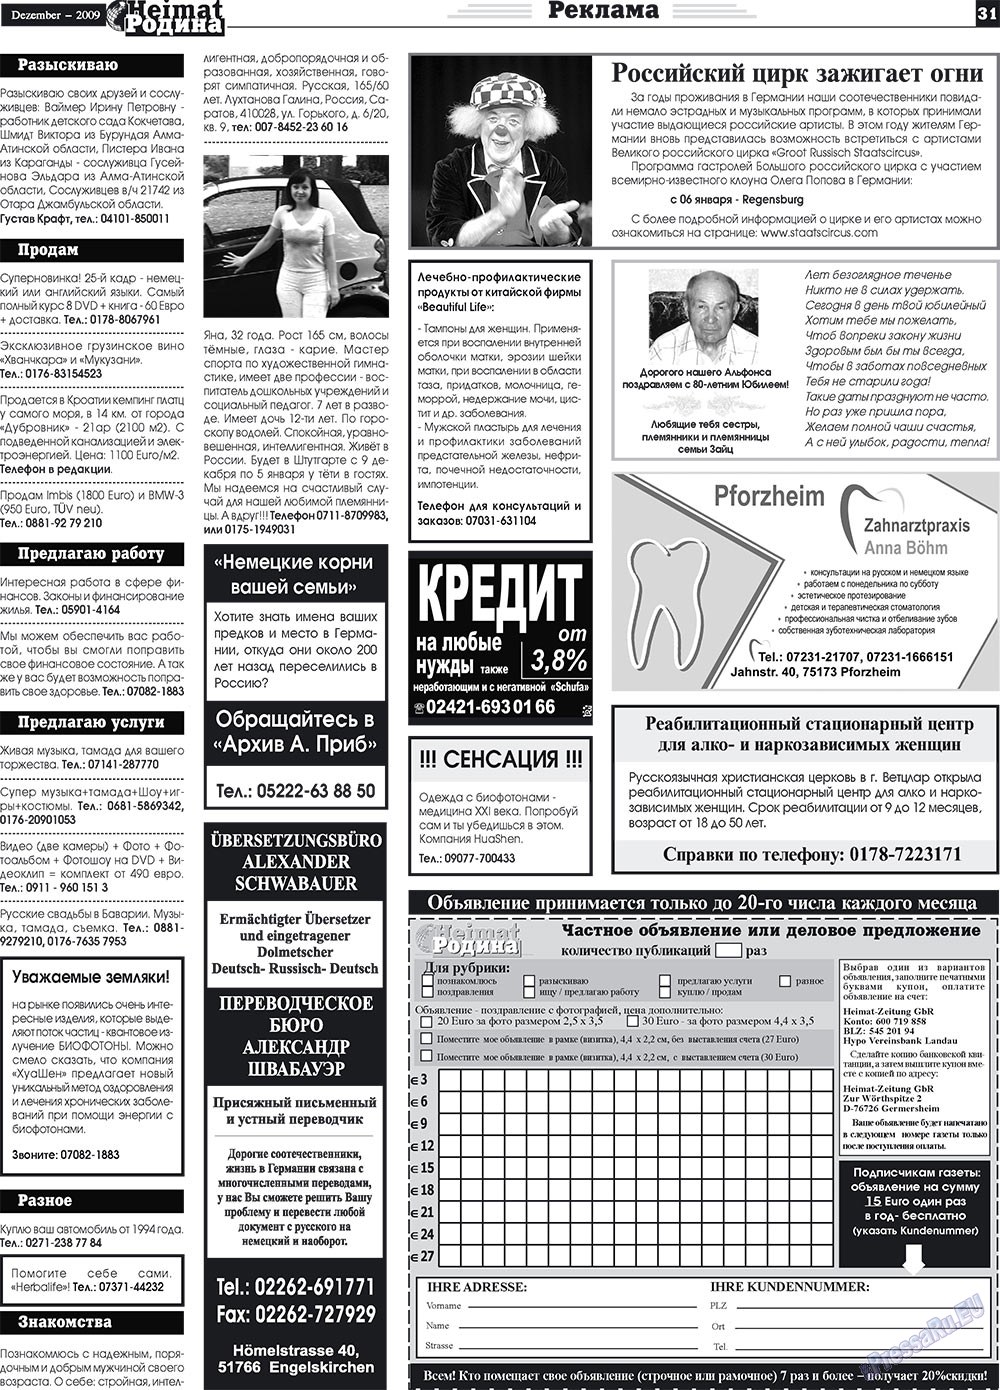 Heimat-Родина (газета). 2009 год, номер 12, стр. 31